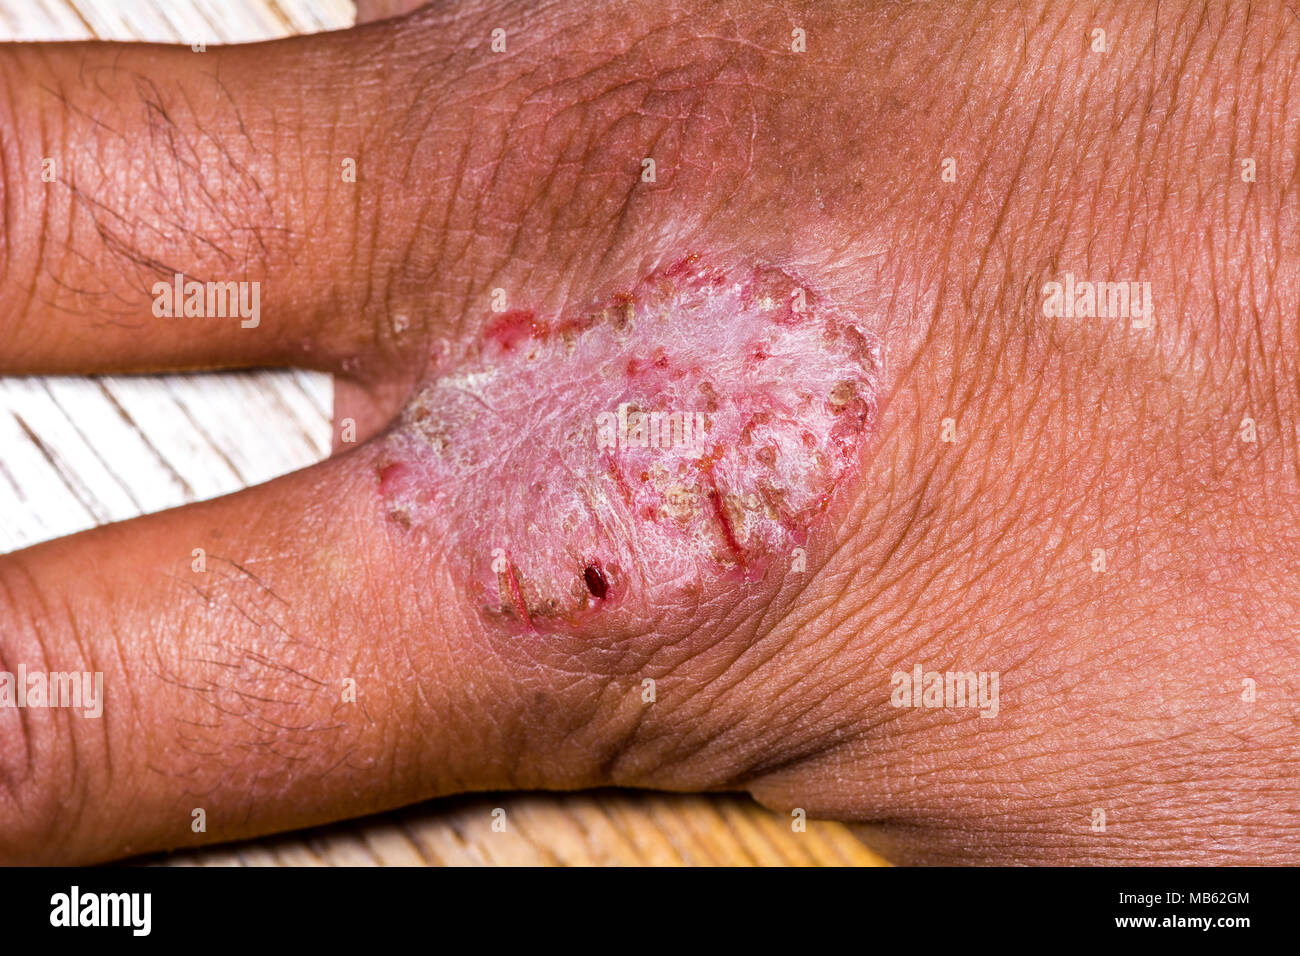 Cerca de eczemas o psoriasis en mano con heridas abiertas en la piel, cáscara y corteza. Foto de stock